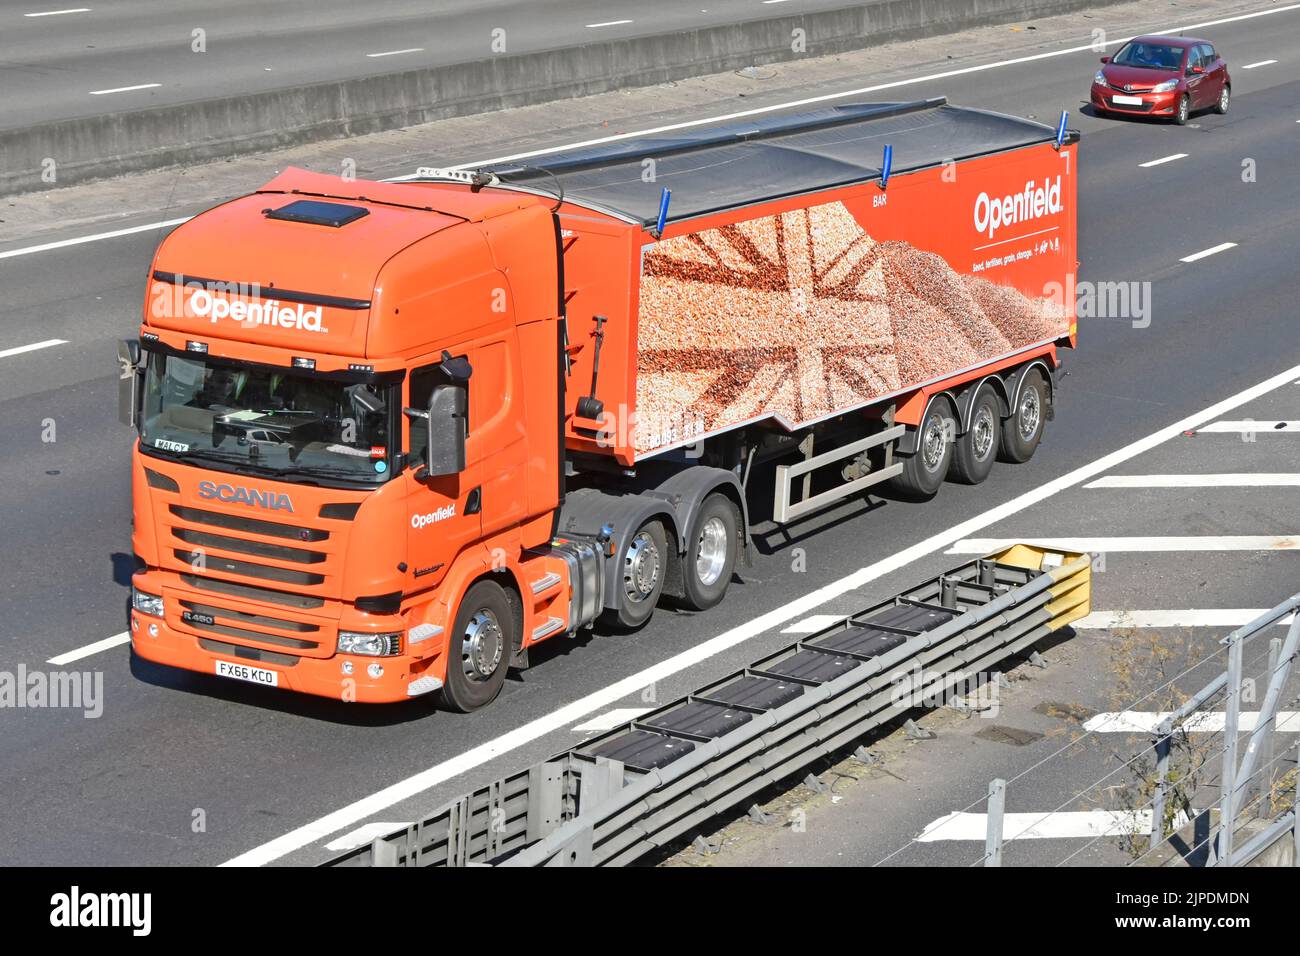 Openfield hgv camión de grano británico marketing & arable inputs co-operativo logotipo de la marca comercial en remolque articulado cubierto en carretera de autopista del Reino Unido Foto de stock